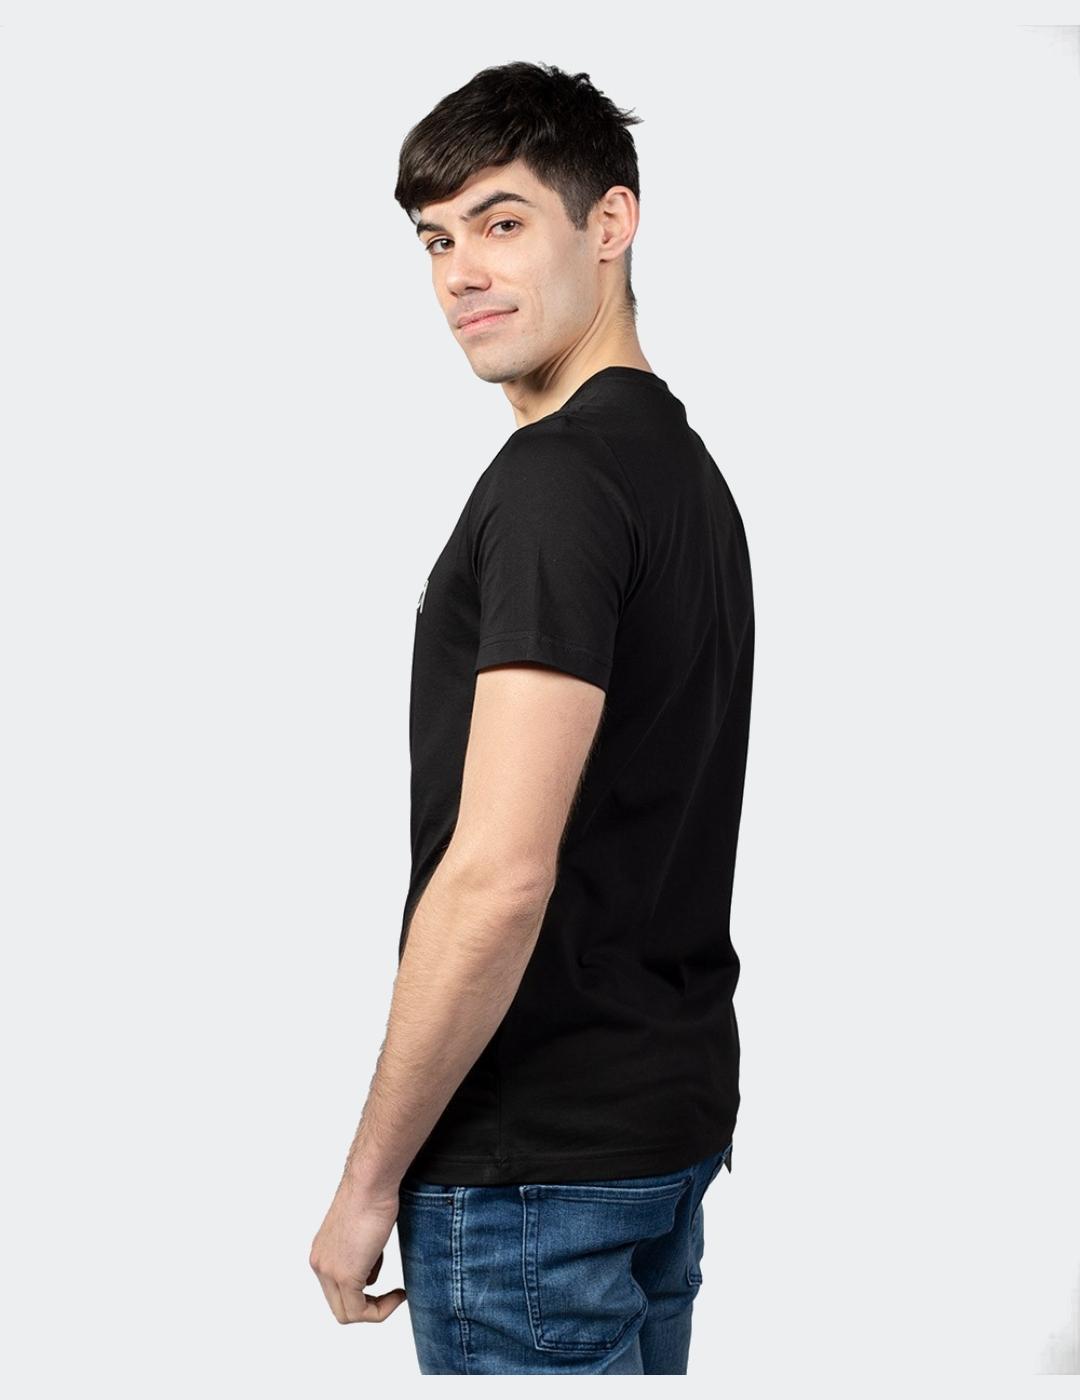 Camiseta Antony Morato negra logo goma para hombre